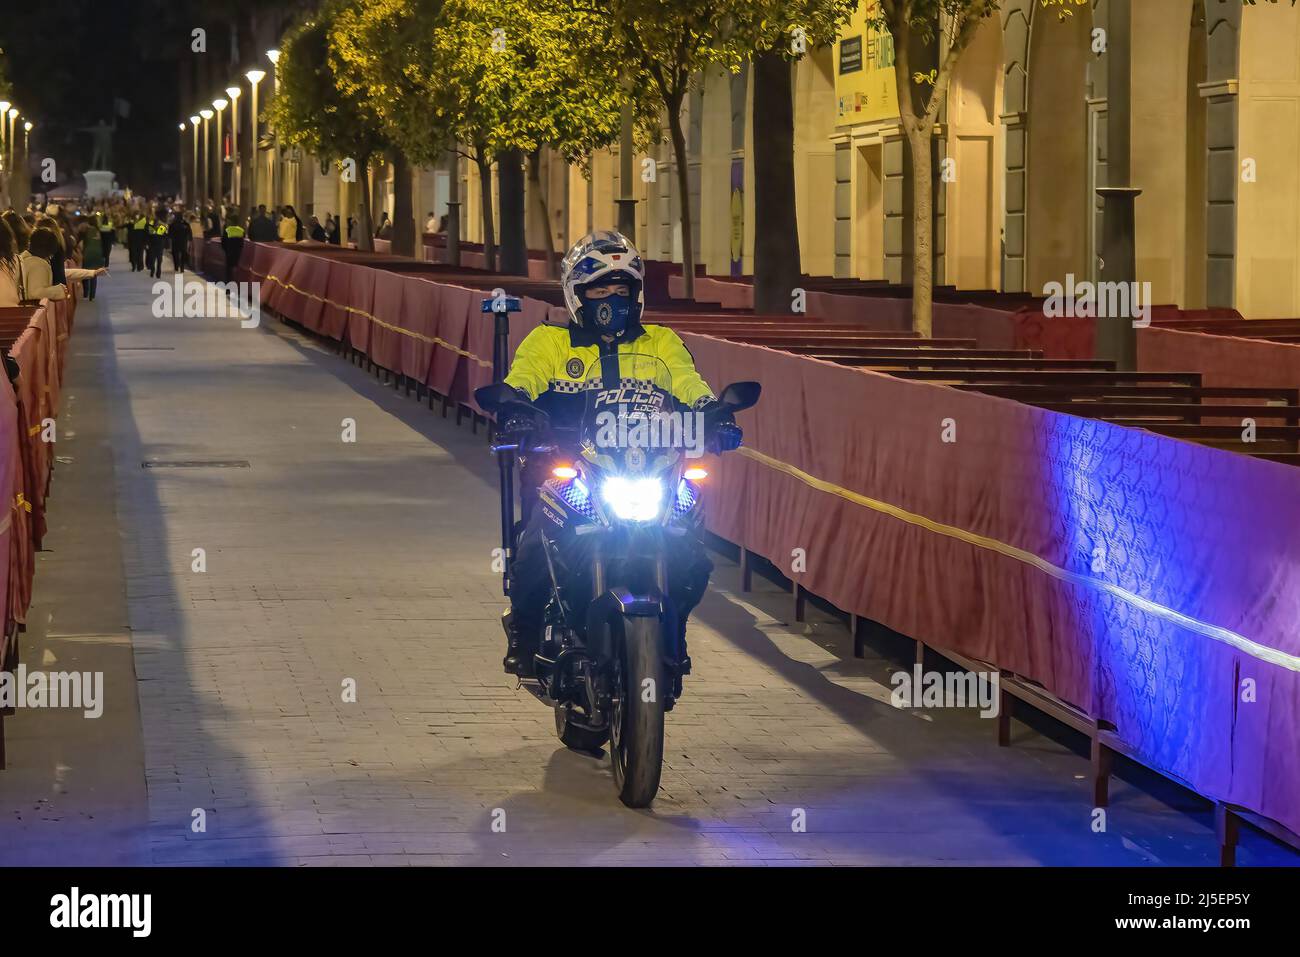 Huelva, Spanien - 15. April 2022: Spanische Polizei in Motorrad mit dem Logo der lokalen Polizei auf Uniform hält die öffentliche Ordnung in den Straßen von Huelva aufrecht Stockfoto